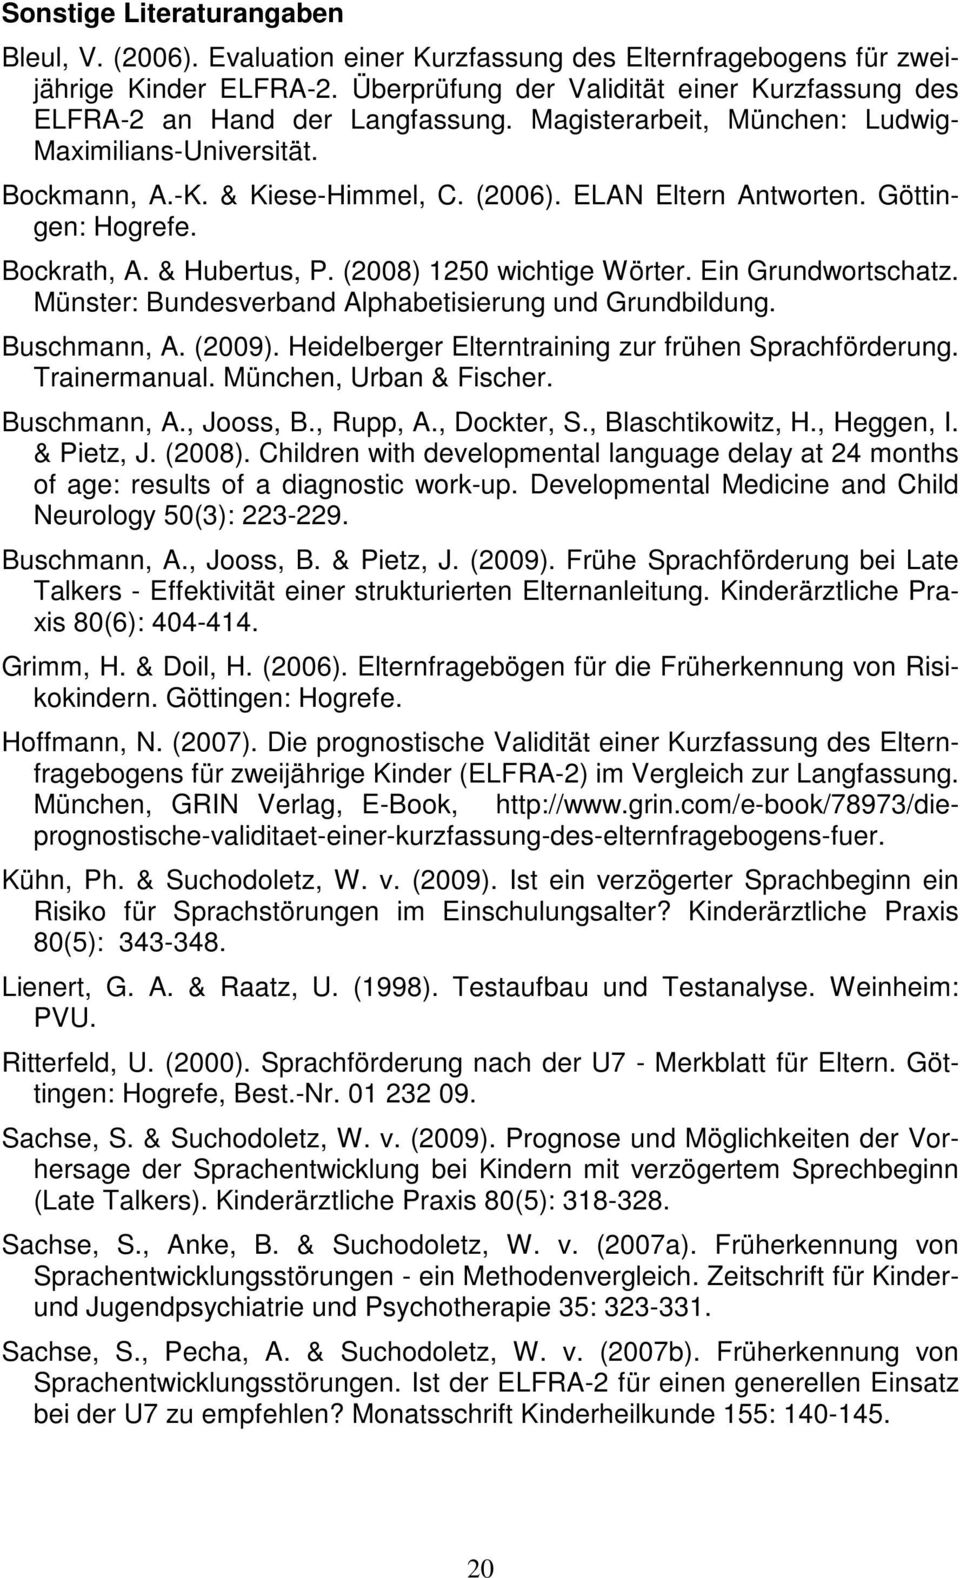 ELAN Eltern Antworten. Göttingen: Hogrefe. Bockrath, A. & Hubertus, P. (2008) 1250 wichtige Wörter. Ein Grundwortschatz. Münster: Bundesverband Alphabetisierung und Grundbildung. Buschmann, A. (2009).